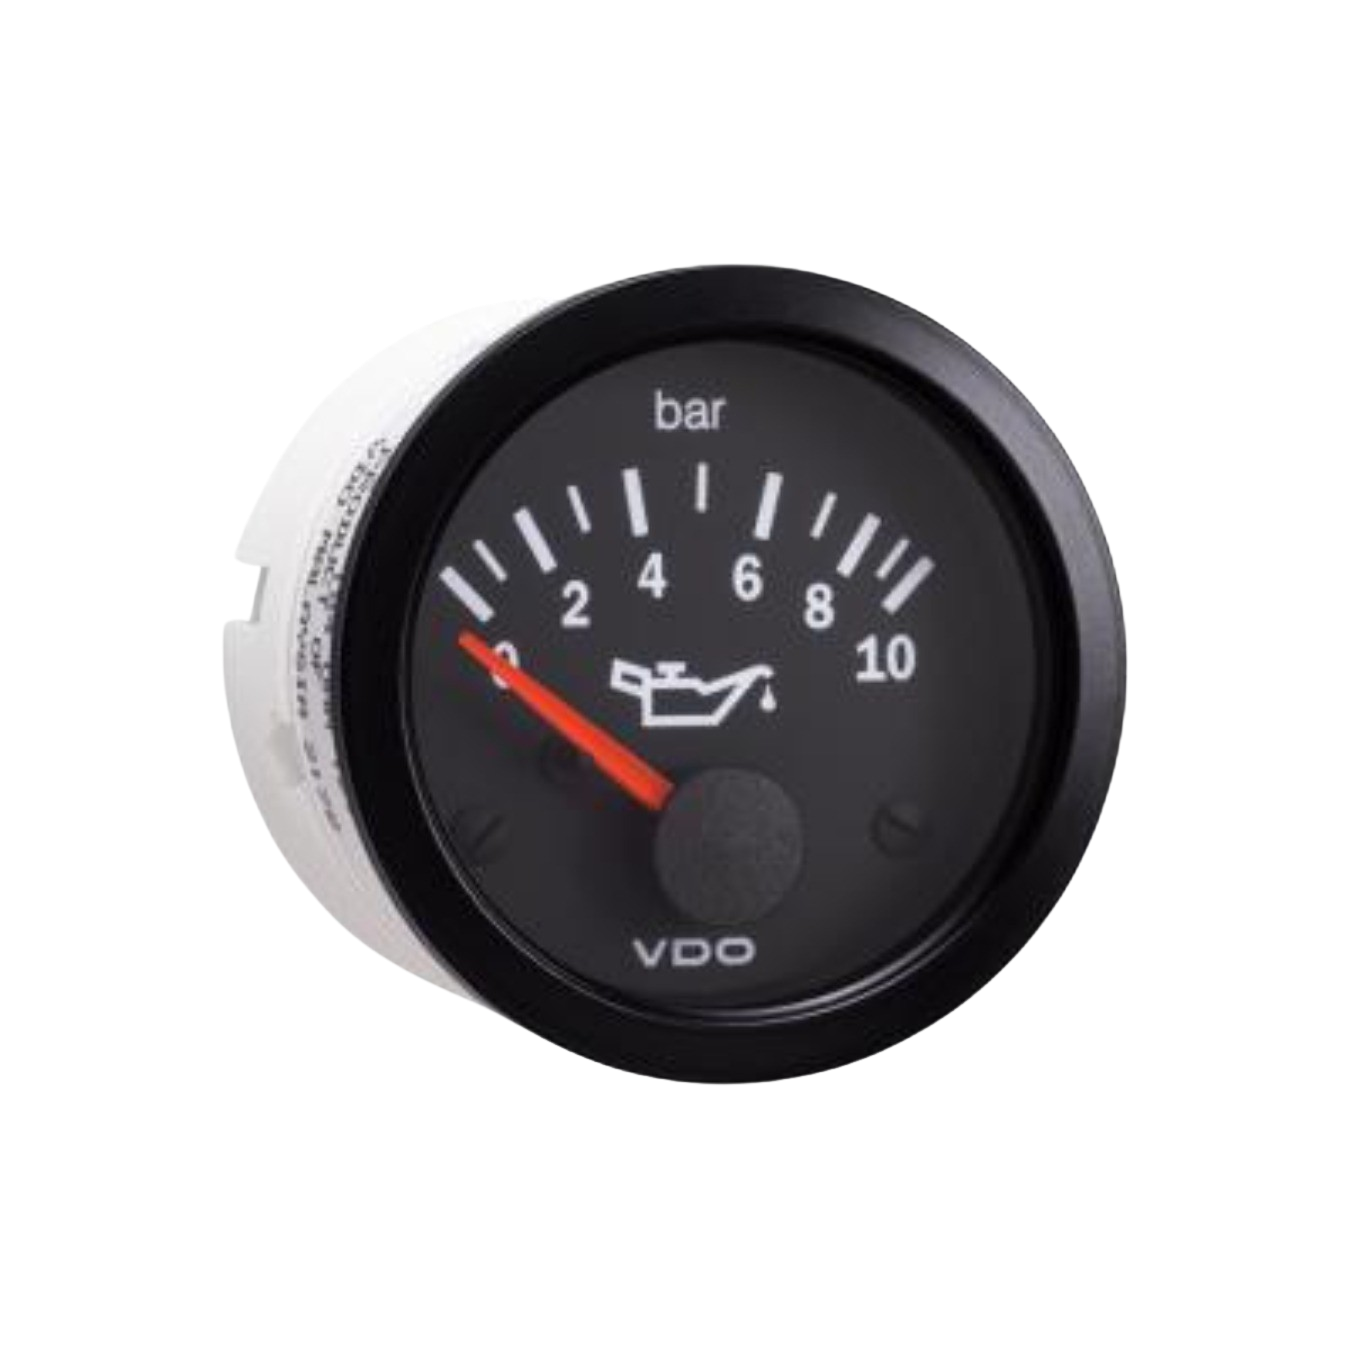 VDO Cockpit Vision Öldruckanzeige 0 bis 10 Bar